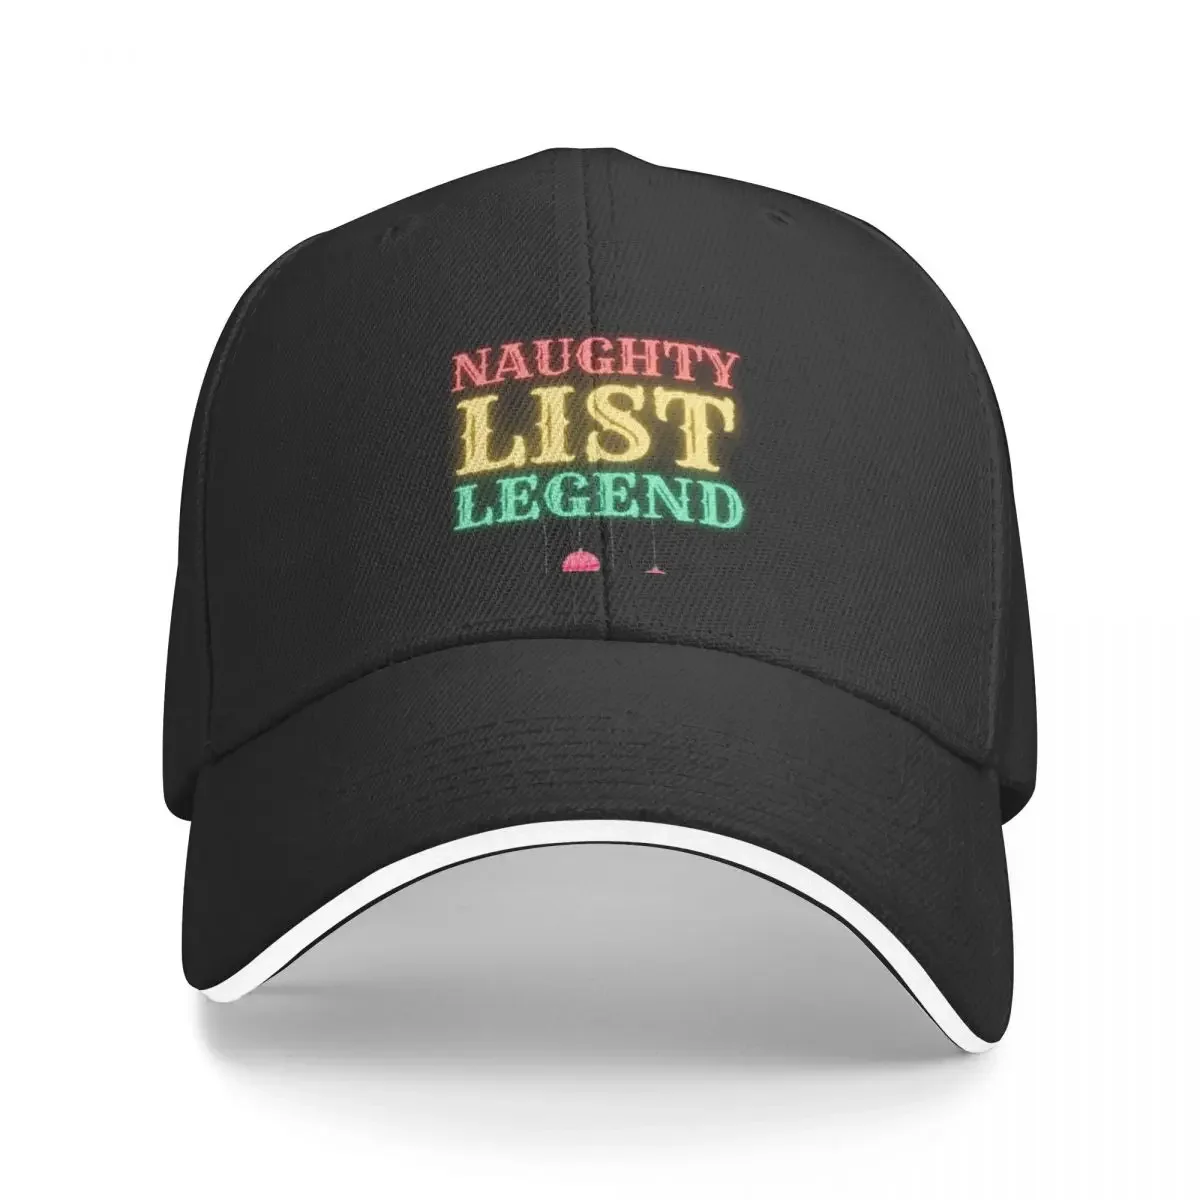 

Naughty list legend Baseball Cap Rugby Trucker Cap Sun Hat For Children Golf Women Men's